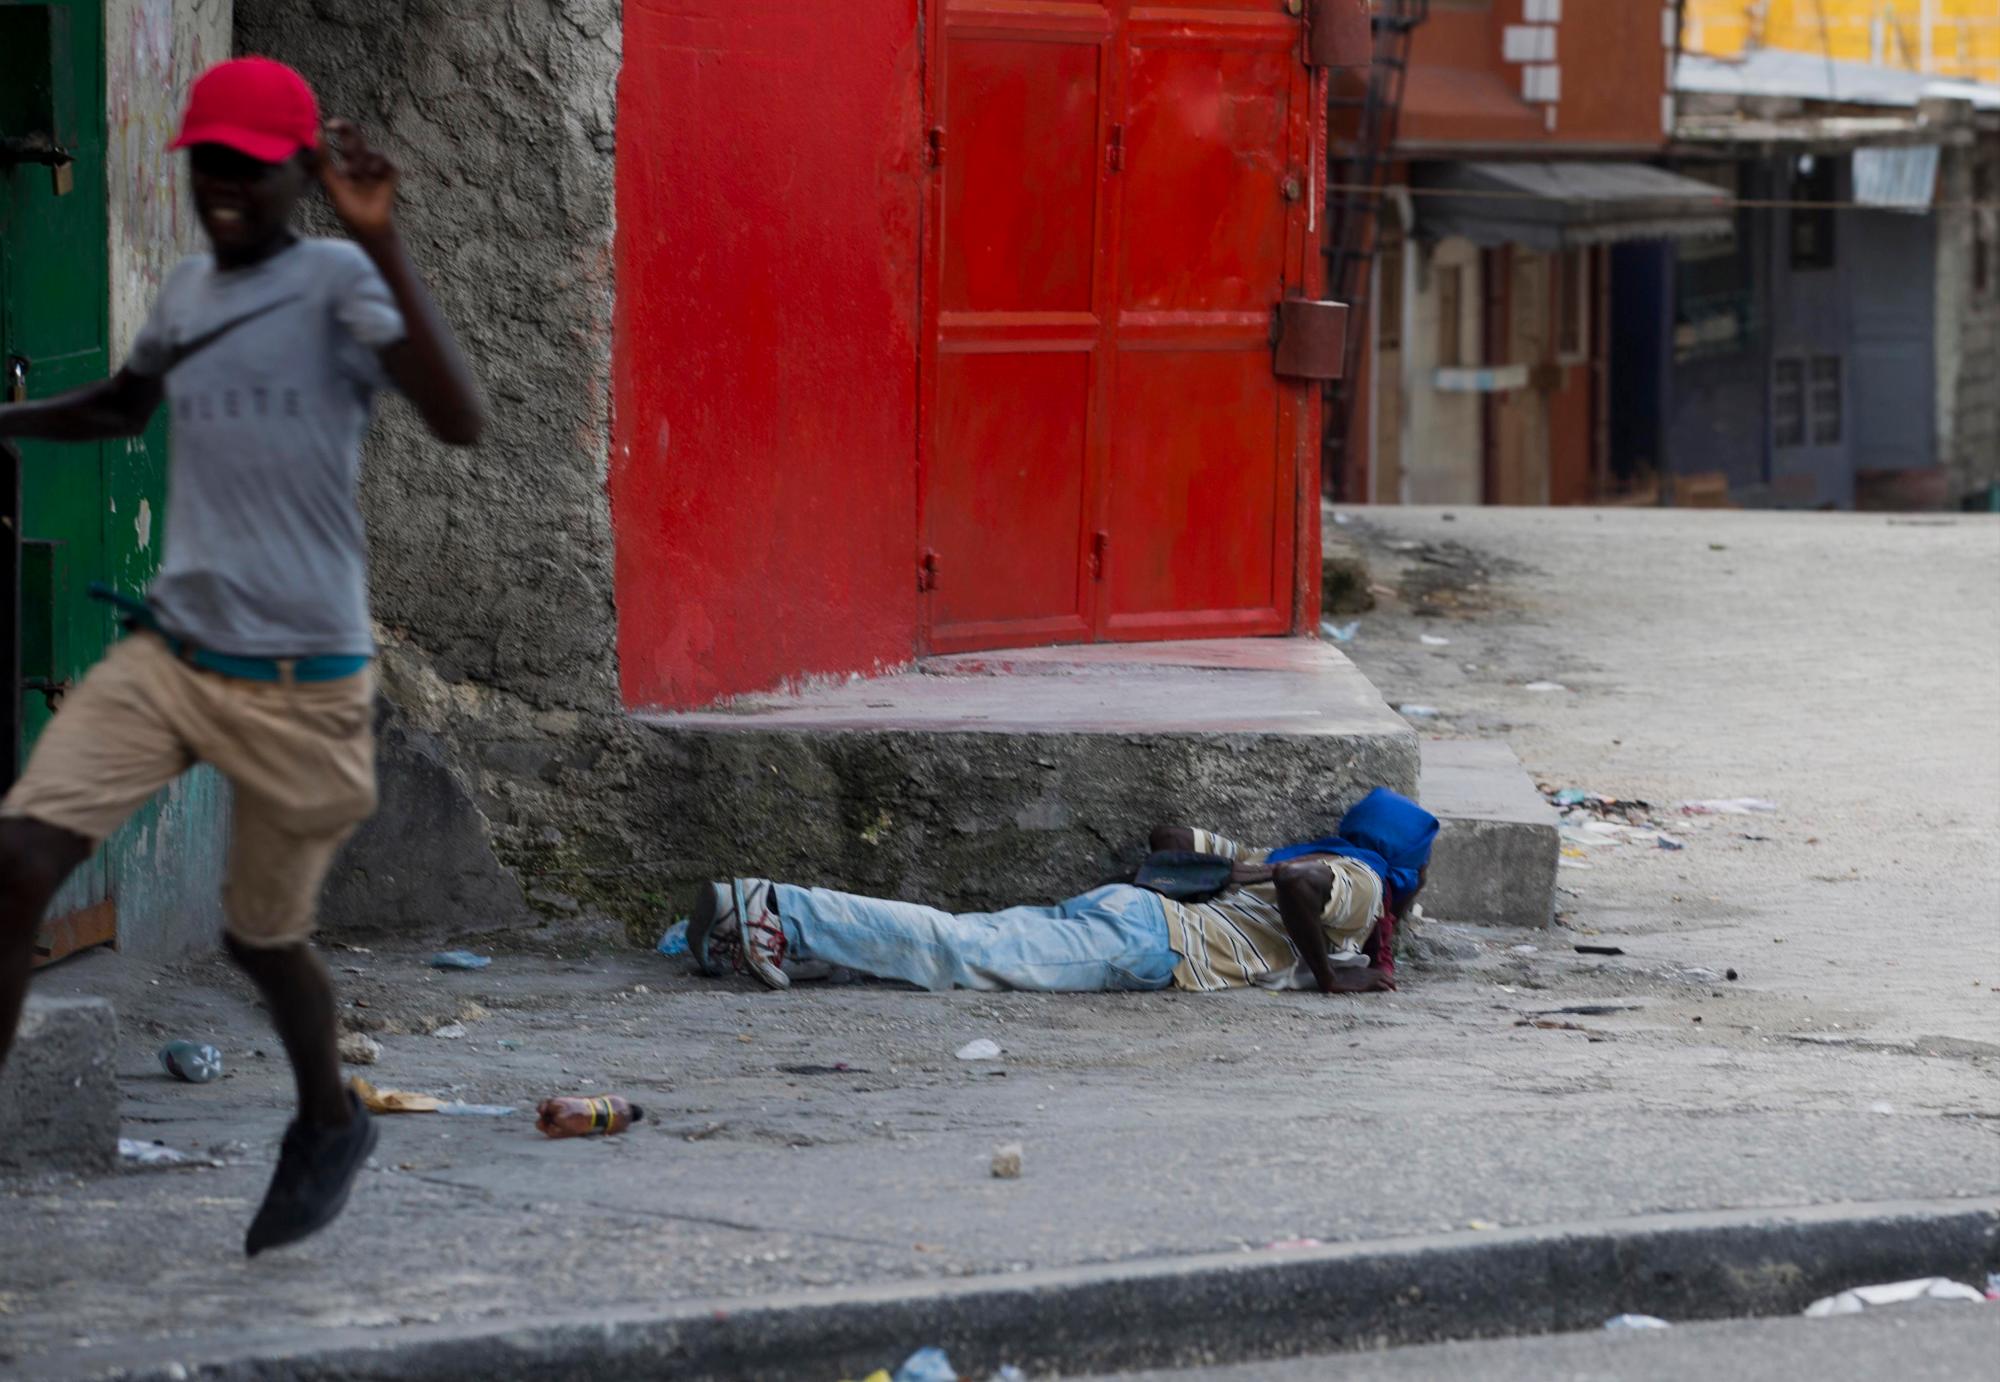 Un manifestante se acuesta en el suelo para cubrirse mientras otro huye al sonido de los disparos, durante una protesta para exigir la renuncia del presidente de Haití, Jovenel Moise, en el 216 aniversario de la Batalla de Vertieres en Puerto Príncipe, Haití, el lunes. 18 de noviembre de 2019. Al menos cuatro personas fueron baleadas y heridas durante una pequeña protesta en la capital de Haití después de un discurso del presidente Moise. Un periodista local, un oficial de policía y dos manifestantes fueron trasladados rápidamente con heridas de bala aparentes. 